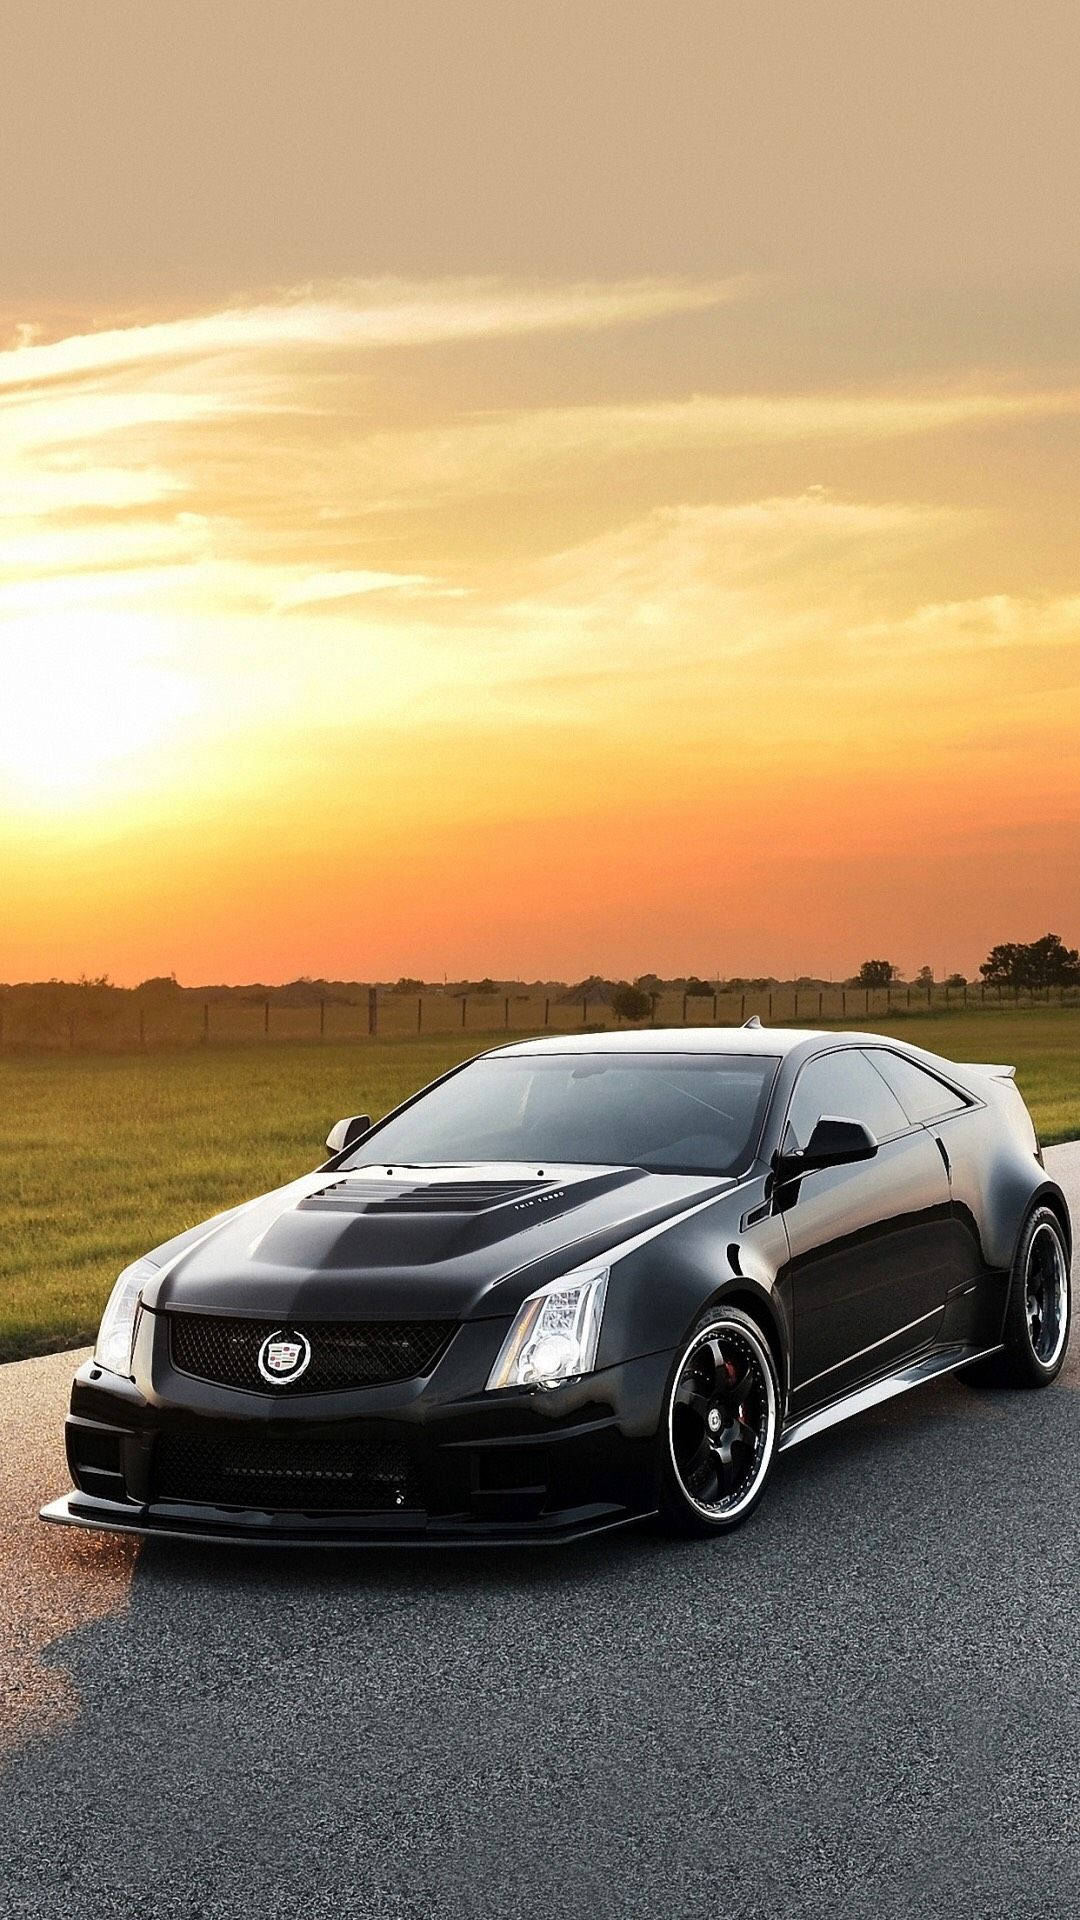 Customized Black Cadillac Coupe Background